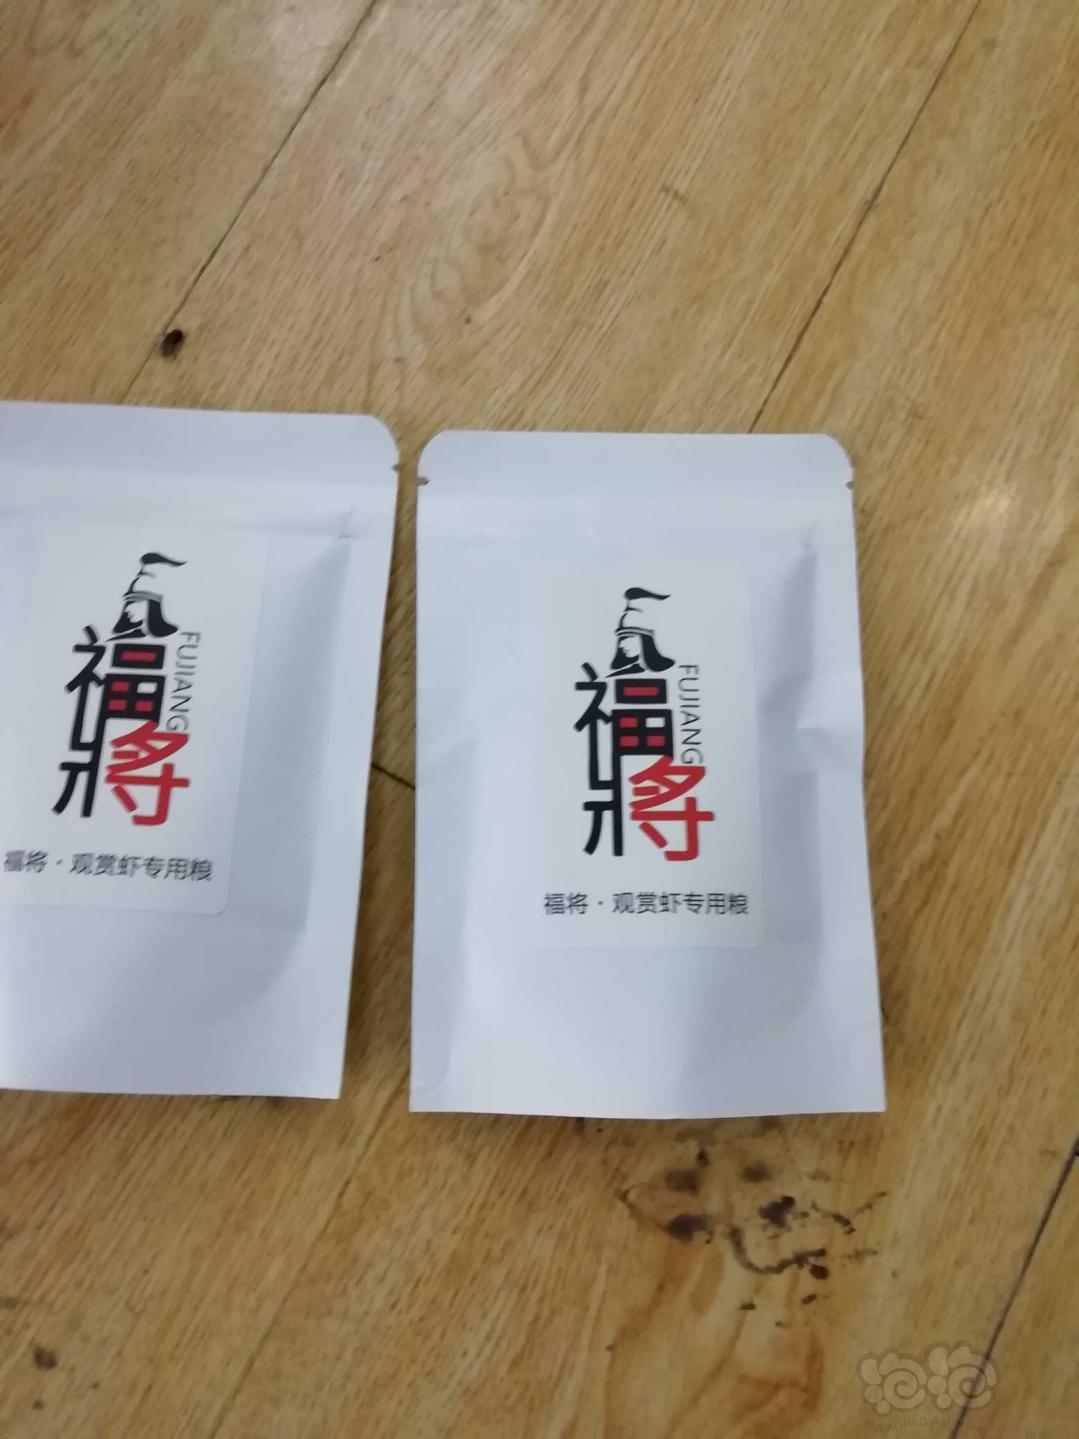 【虾】2019-02-23#RMB拍卖虾粮一份-图1